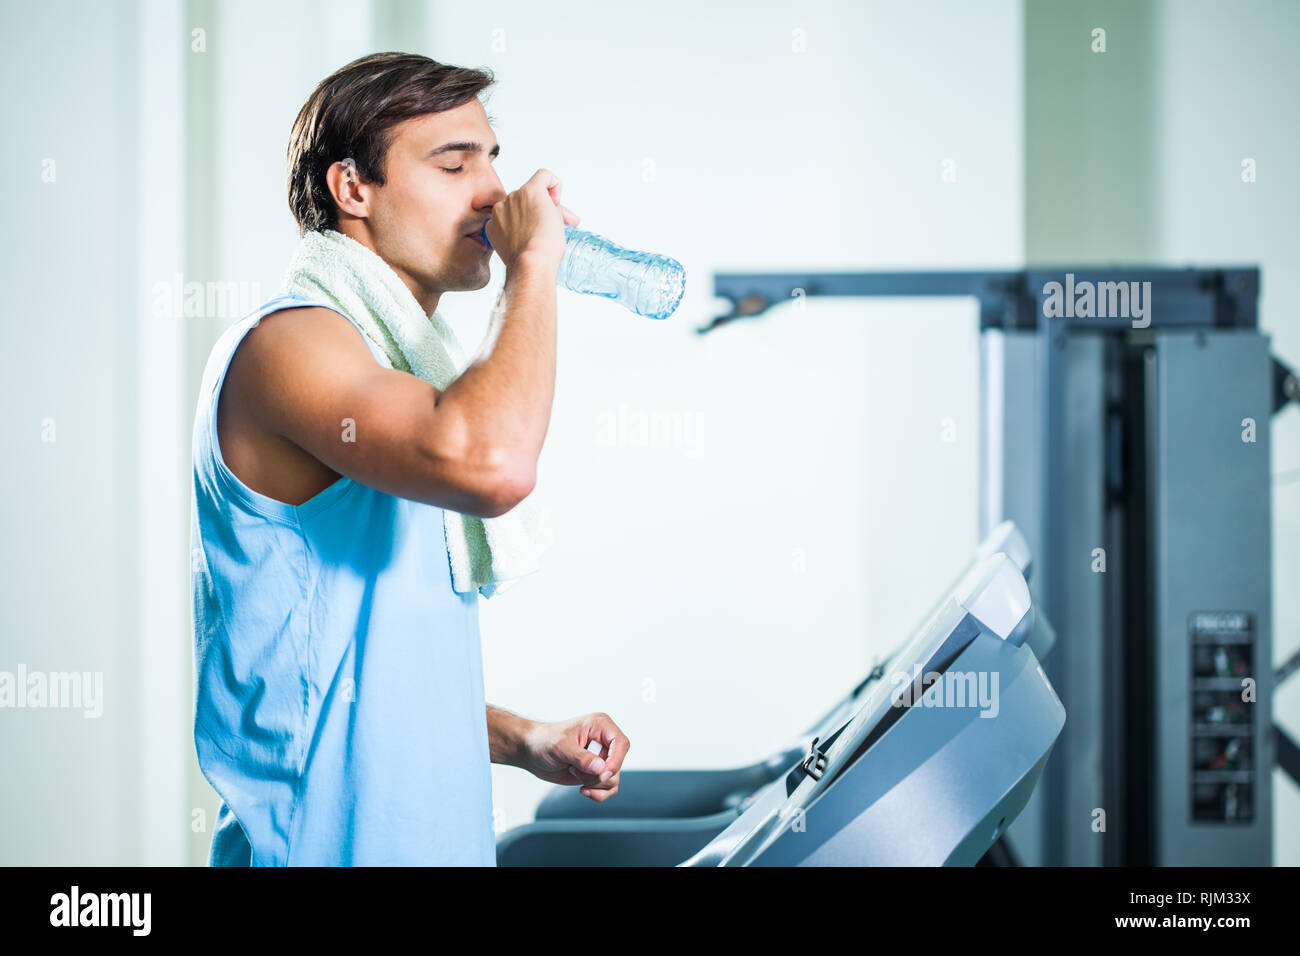 Man Trinkwasser während des Trainings in der Turnhalle Stockfoto